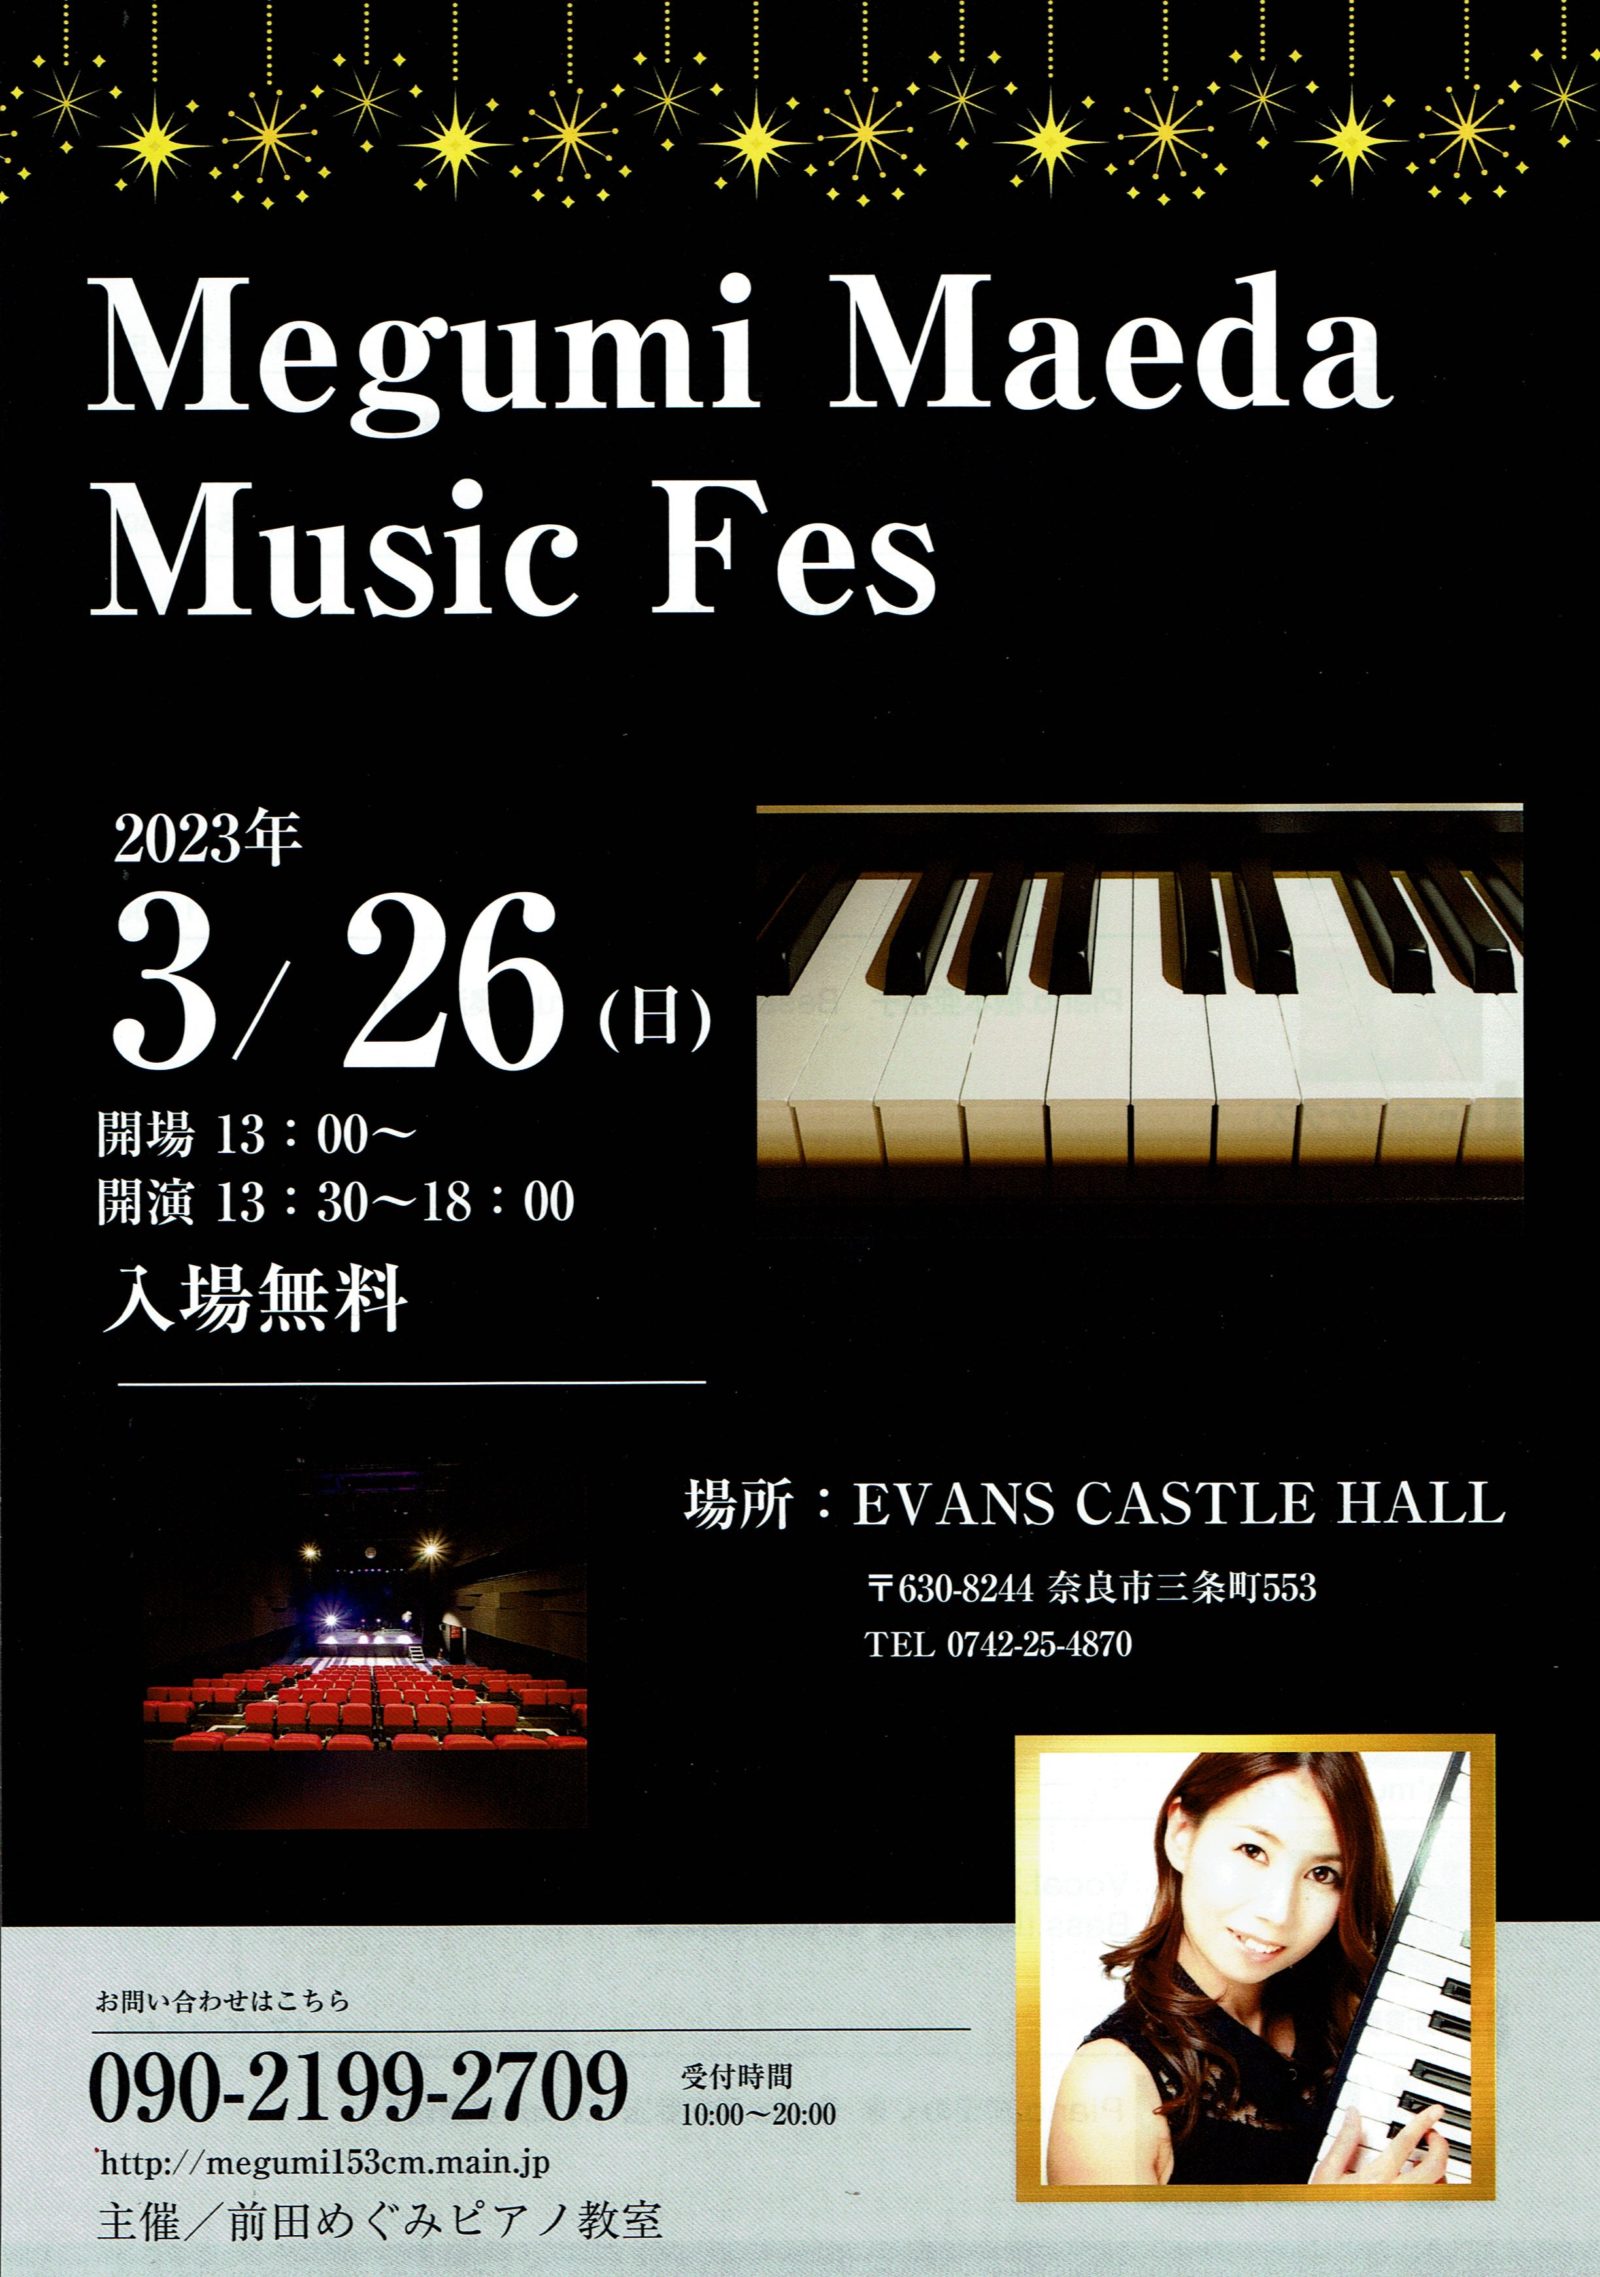 Megumi Maeda Music Fes